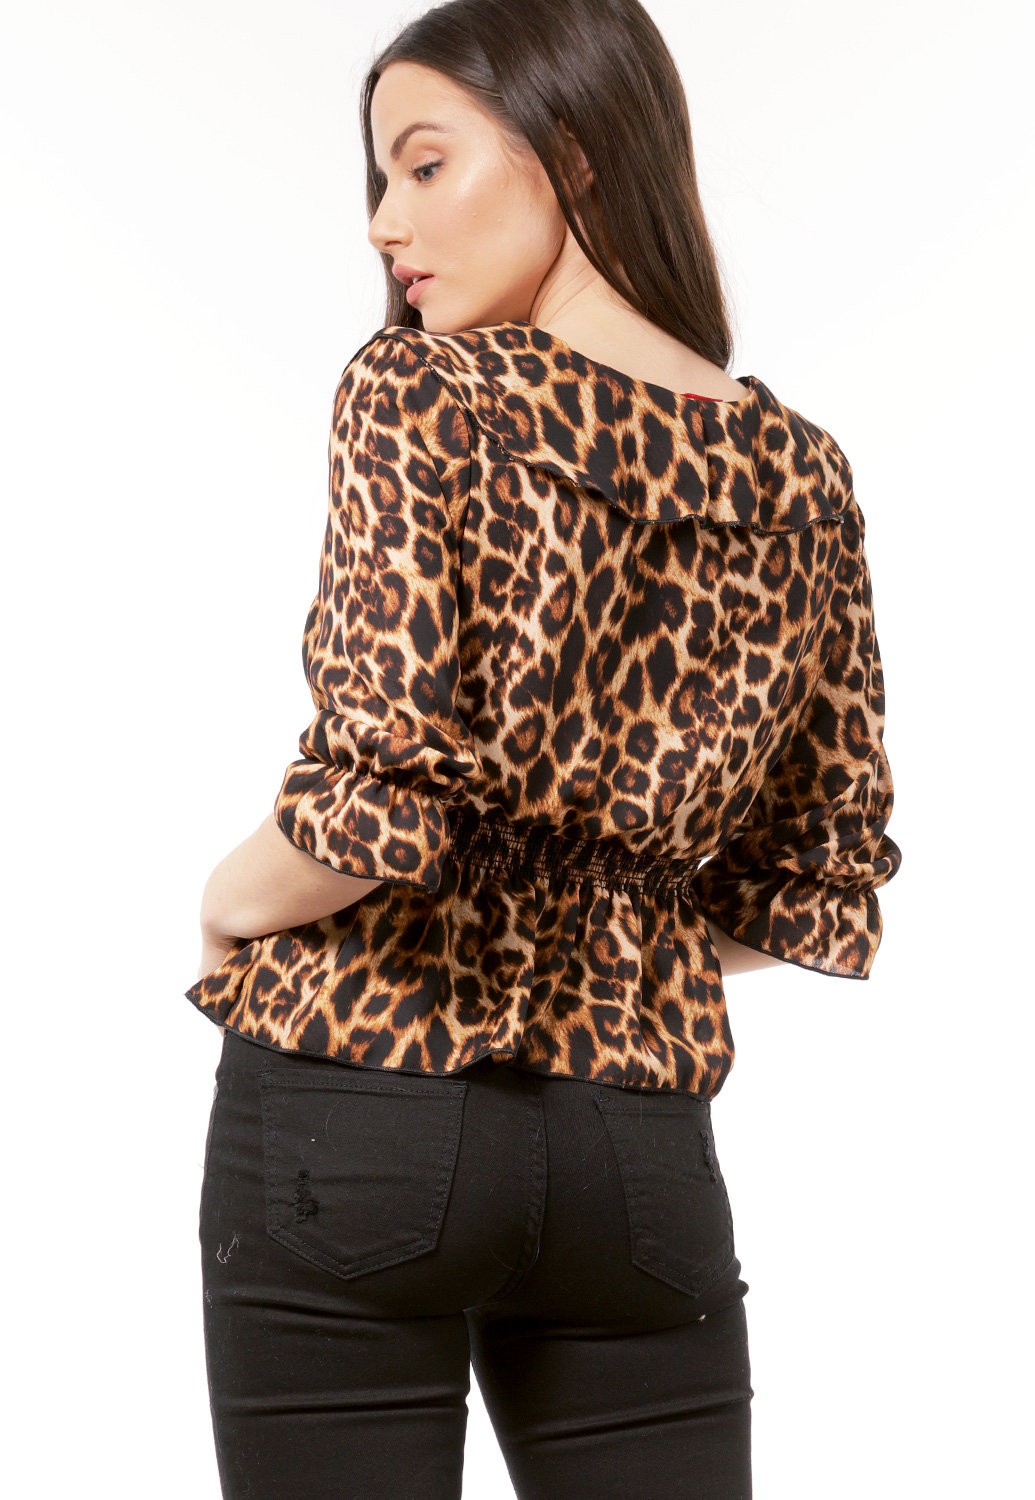 Cheetah Print Dressy Top